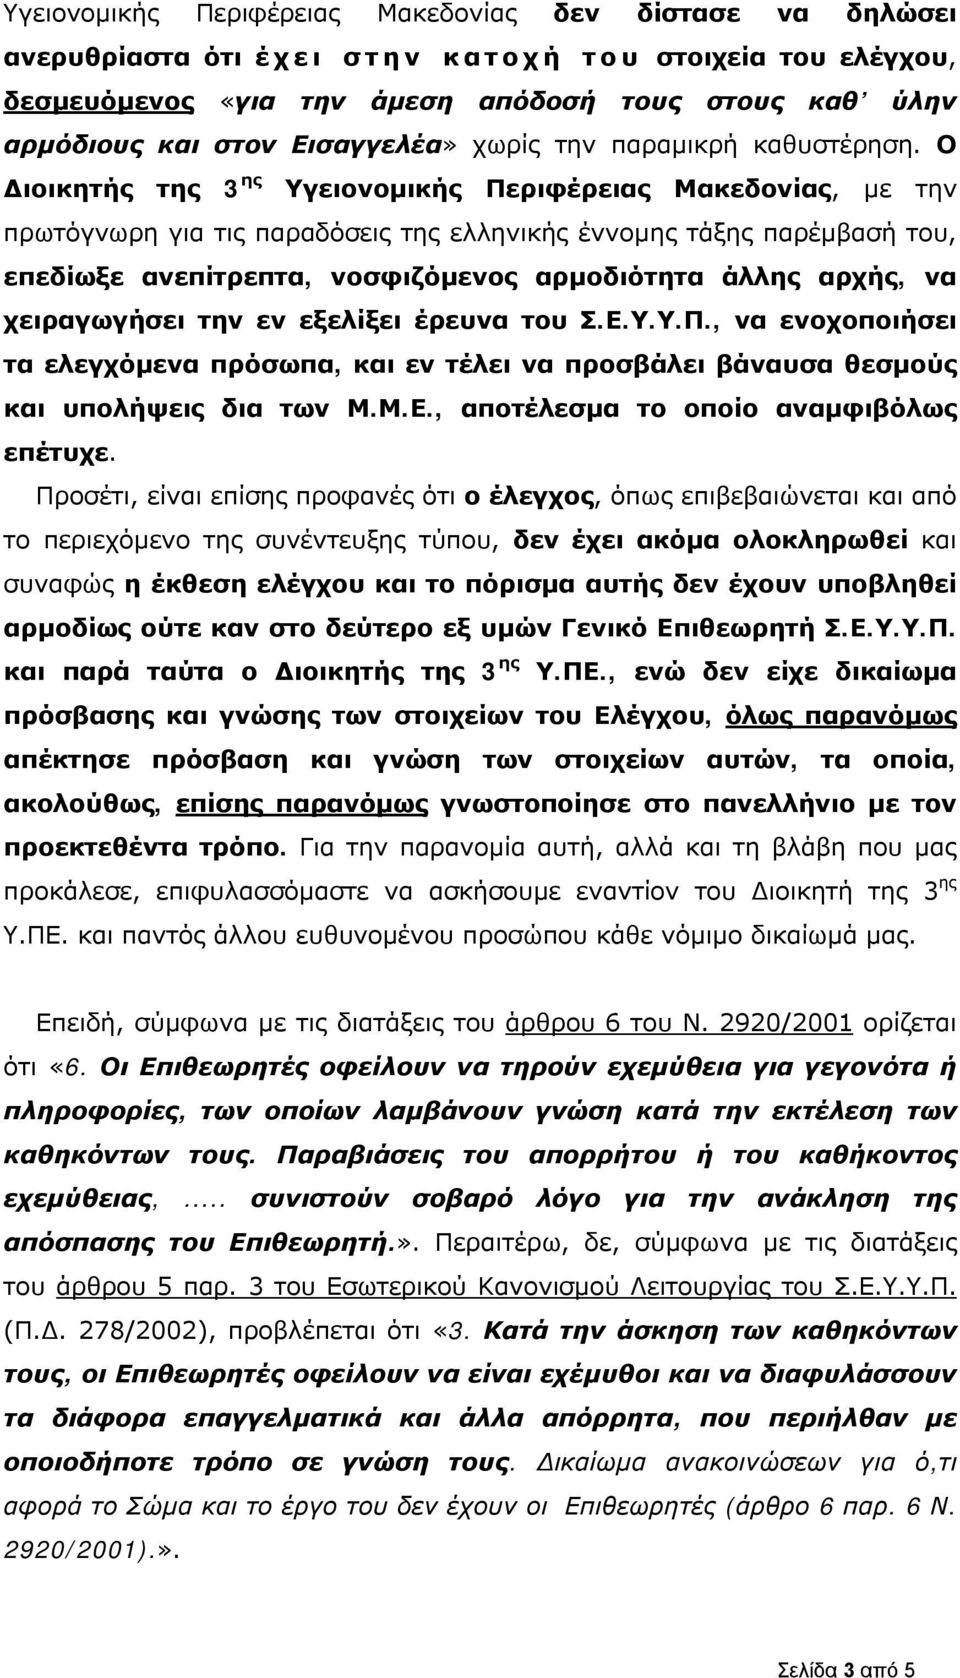 Ο Διοικητής της 3 ης Υγειονομικής Περιφέρειας Μακεδονίας, με την πρωτόγνωρη για τις παραδόσεις της ελληνικής έννομης τάξης παρέμβασή του, επεδίωξε ανεπίτρεπτα, νοσφιζόμενος αρμοδιότητα άλλης αρχής,